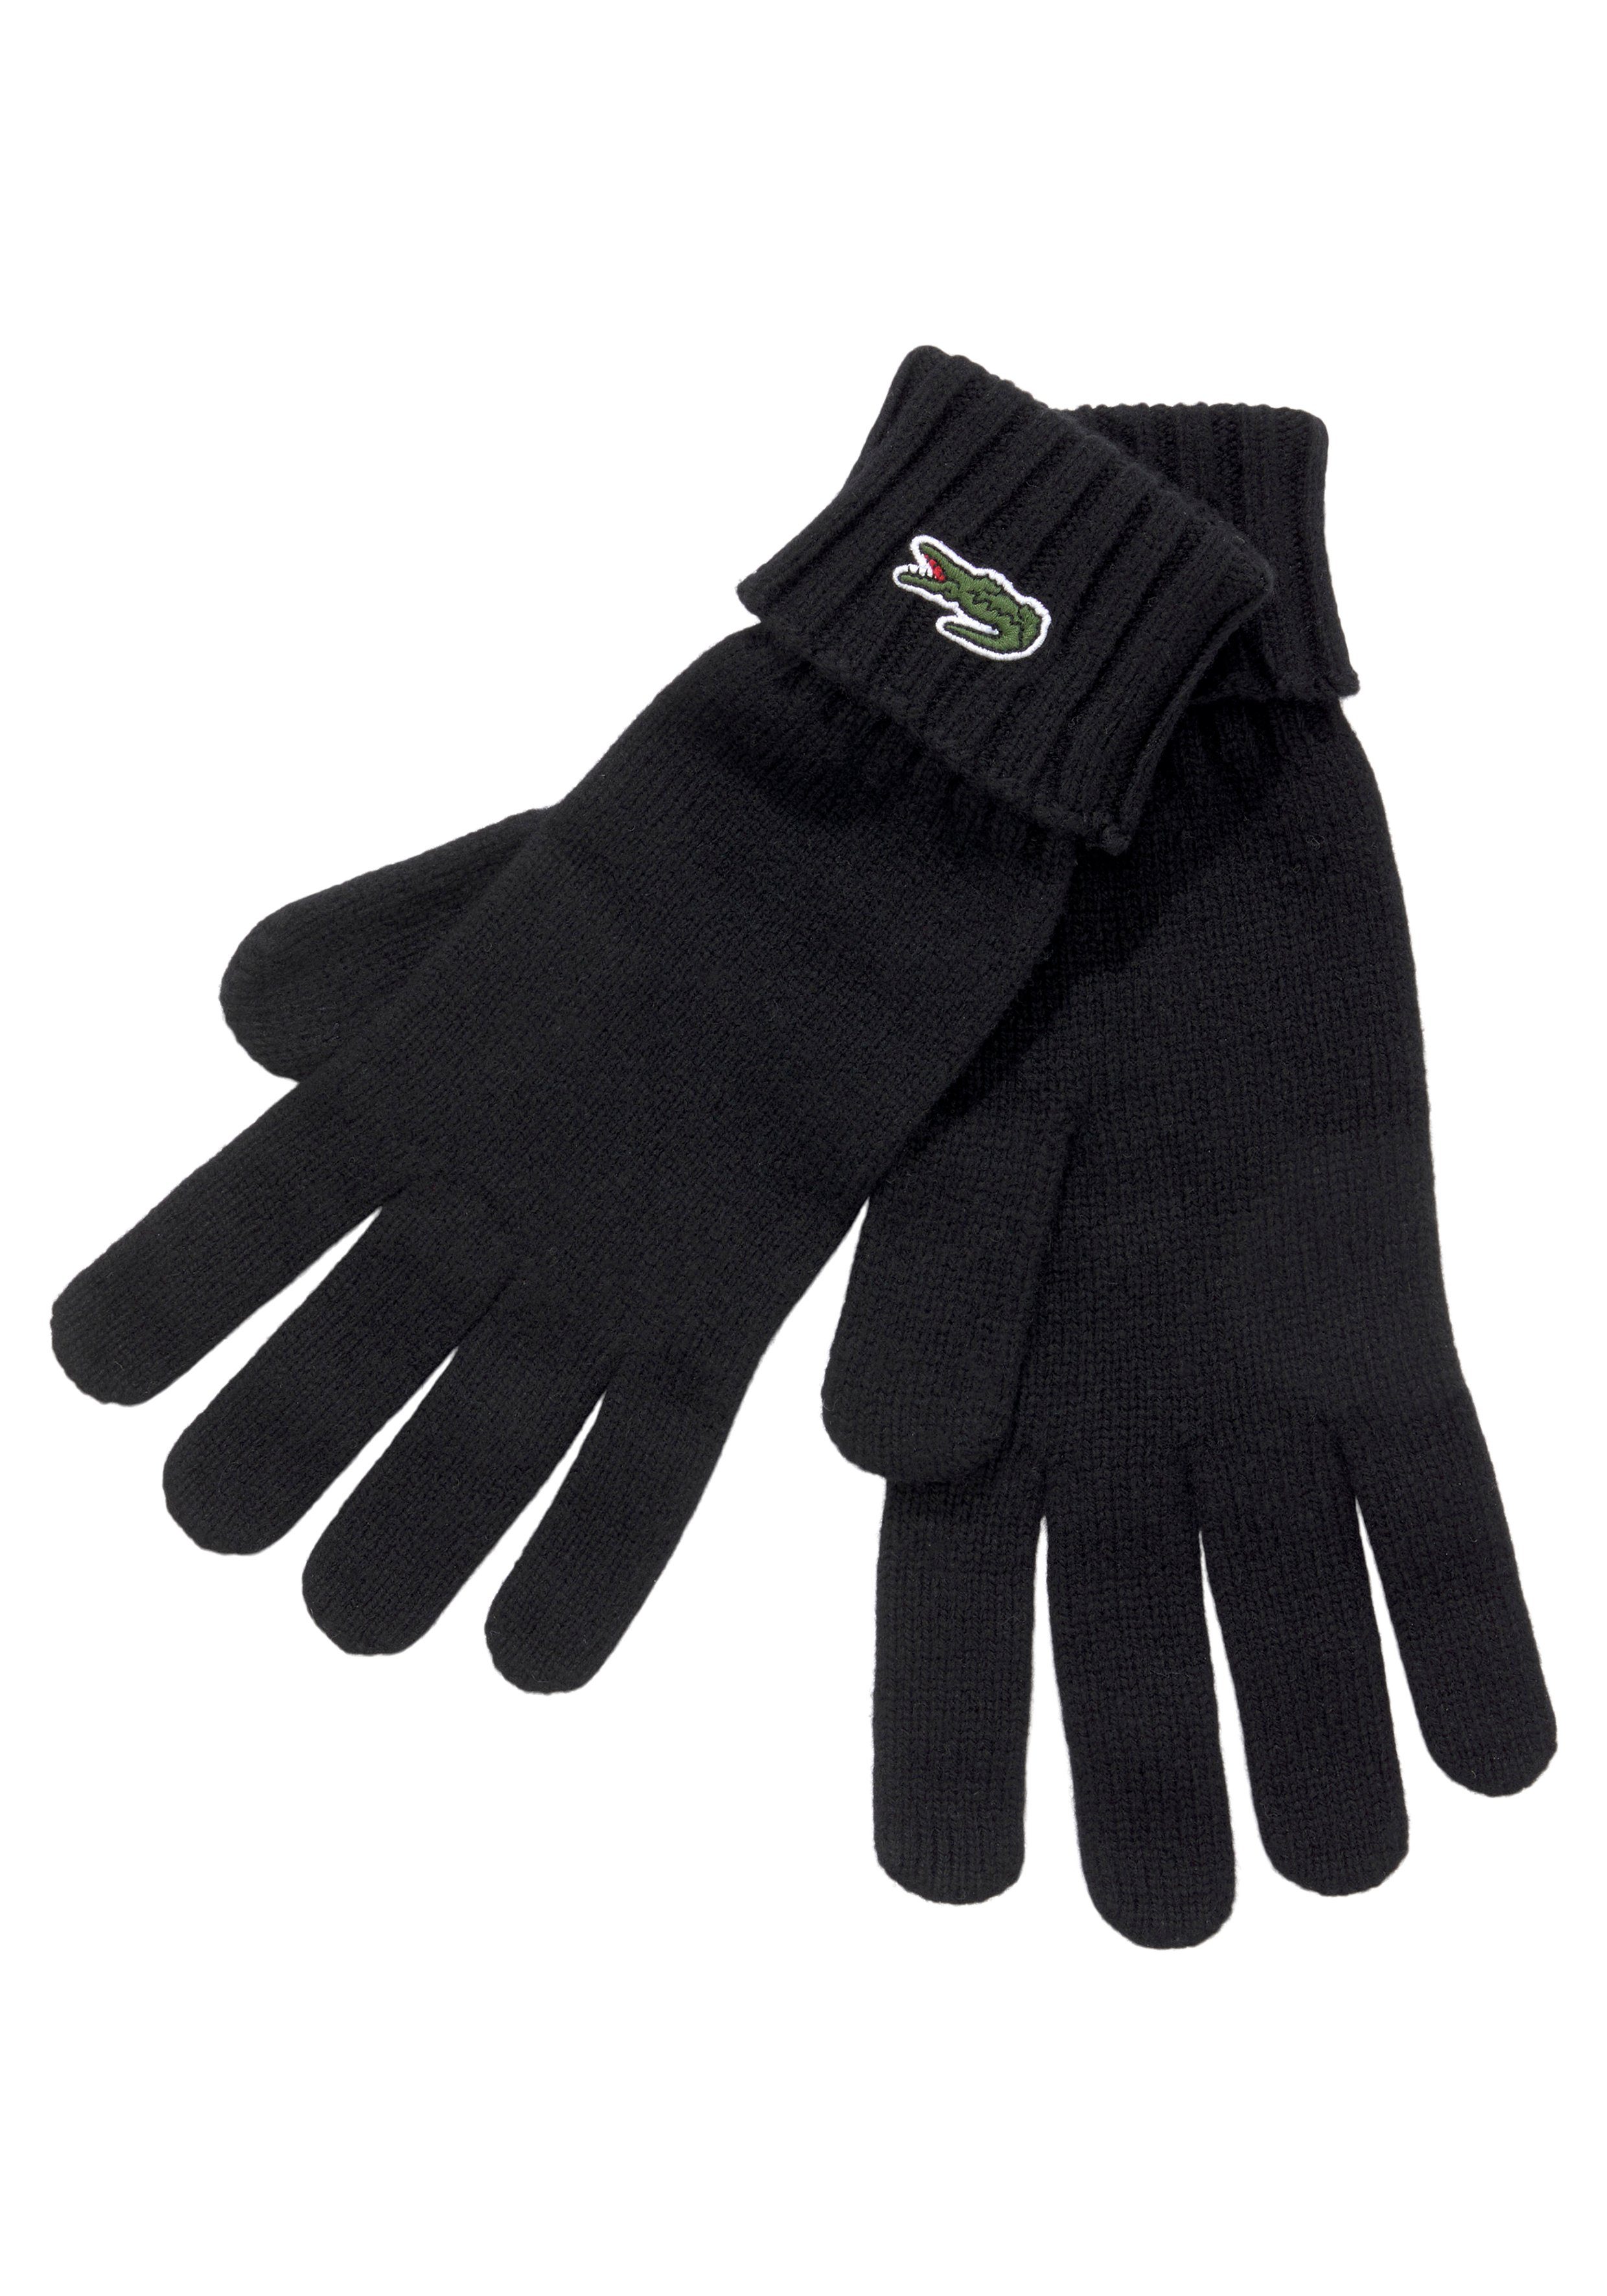 Lacoste Strickhandschuhe Unisex Gloves Strickhandschuhe mit Logo, Geschenk, Gift Premium, Warm schwarz